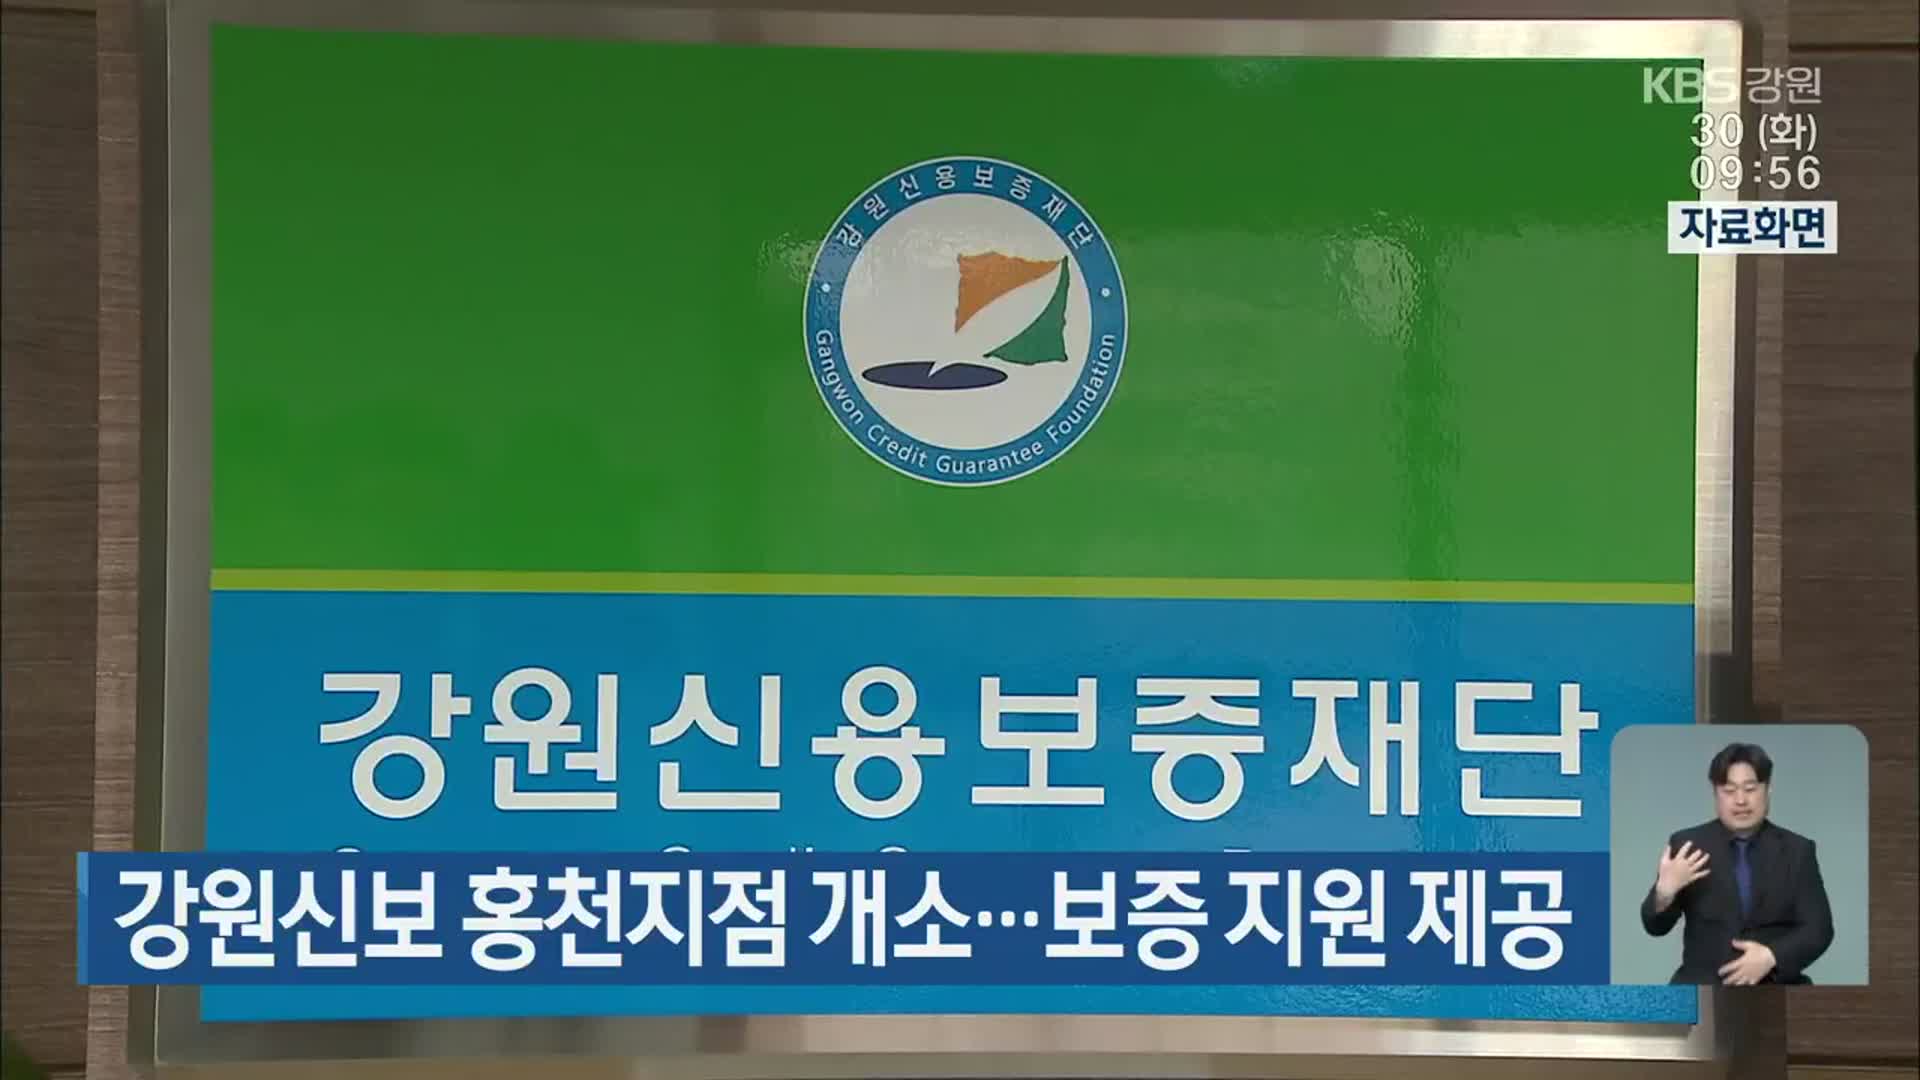 강원신보 홍천지점 개소…보증 지원 제공